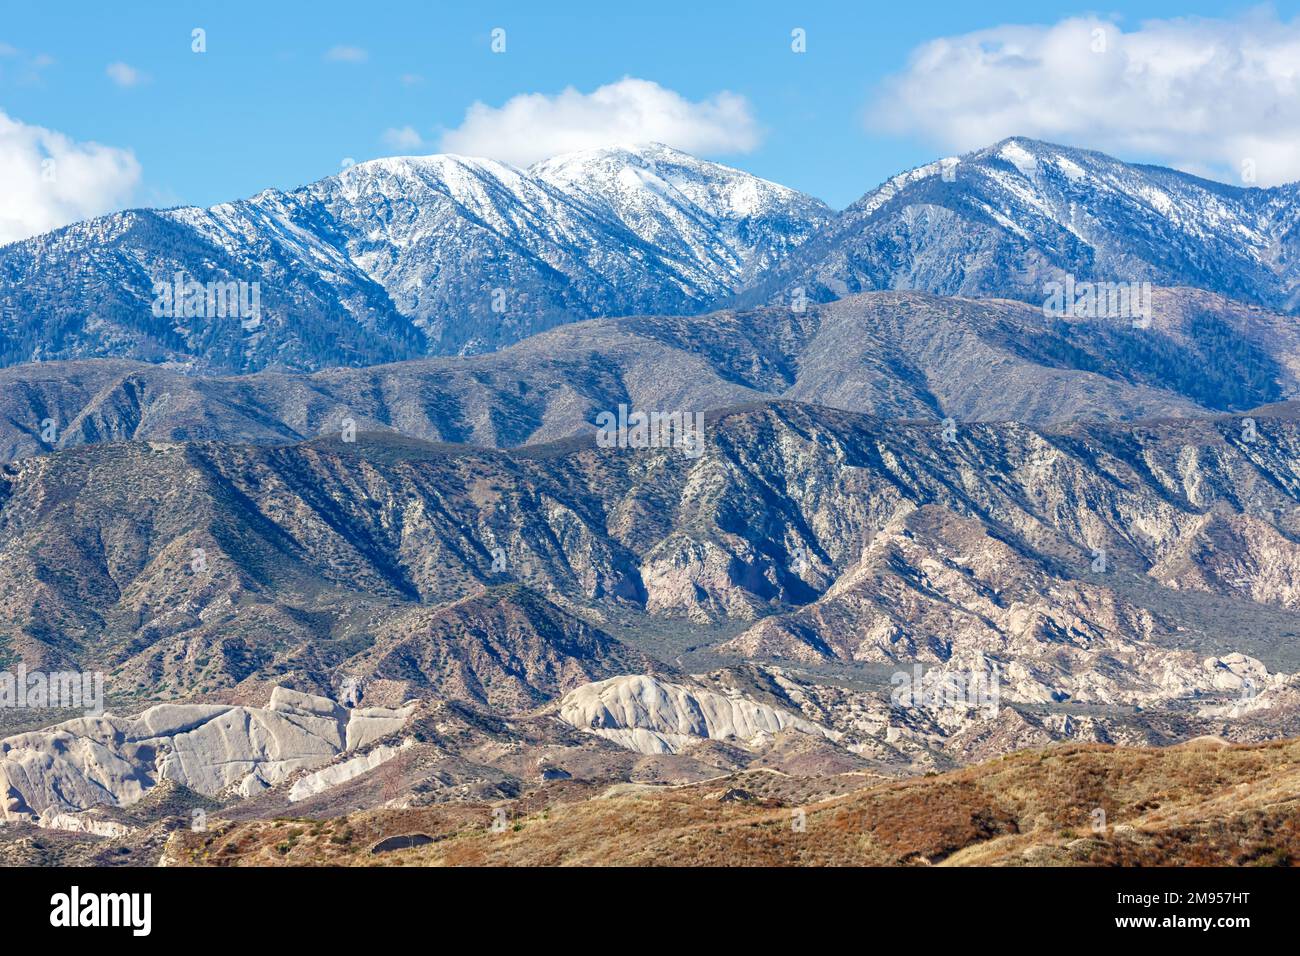 Die Landschaft der San Gabriel Mountains liegt in der Nähe von Los Angeles in Kalifornien, USA Stockfoto